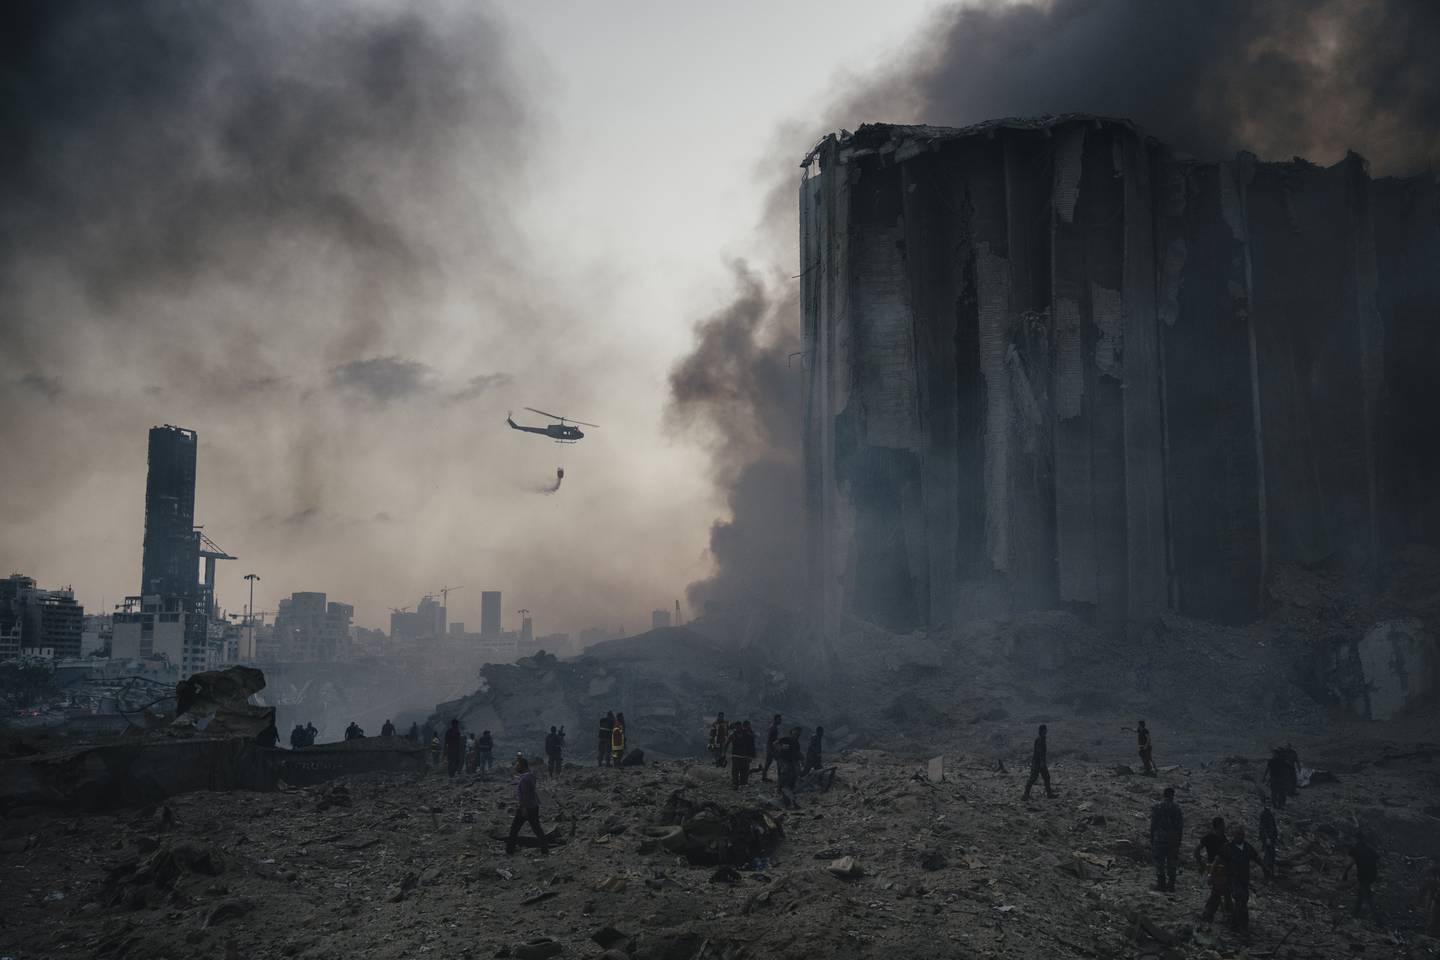 Brannmannskaper i gang med å slukke branner etter den voldsomme eksplosjonen i Beirut i fjor. Foto: Lorenzo Tugnoli, Contrasto, for Washington Post, World Press Photo via AP / NTB